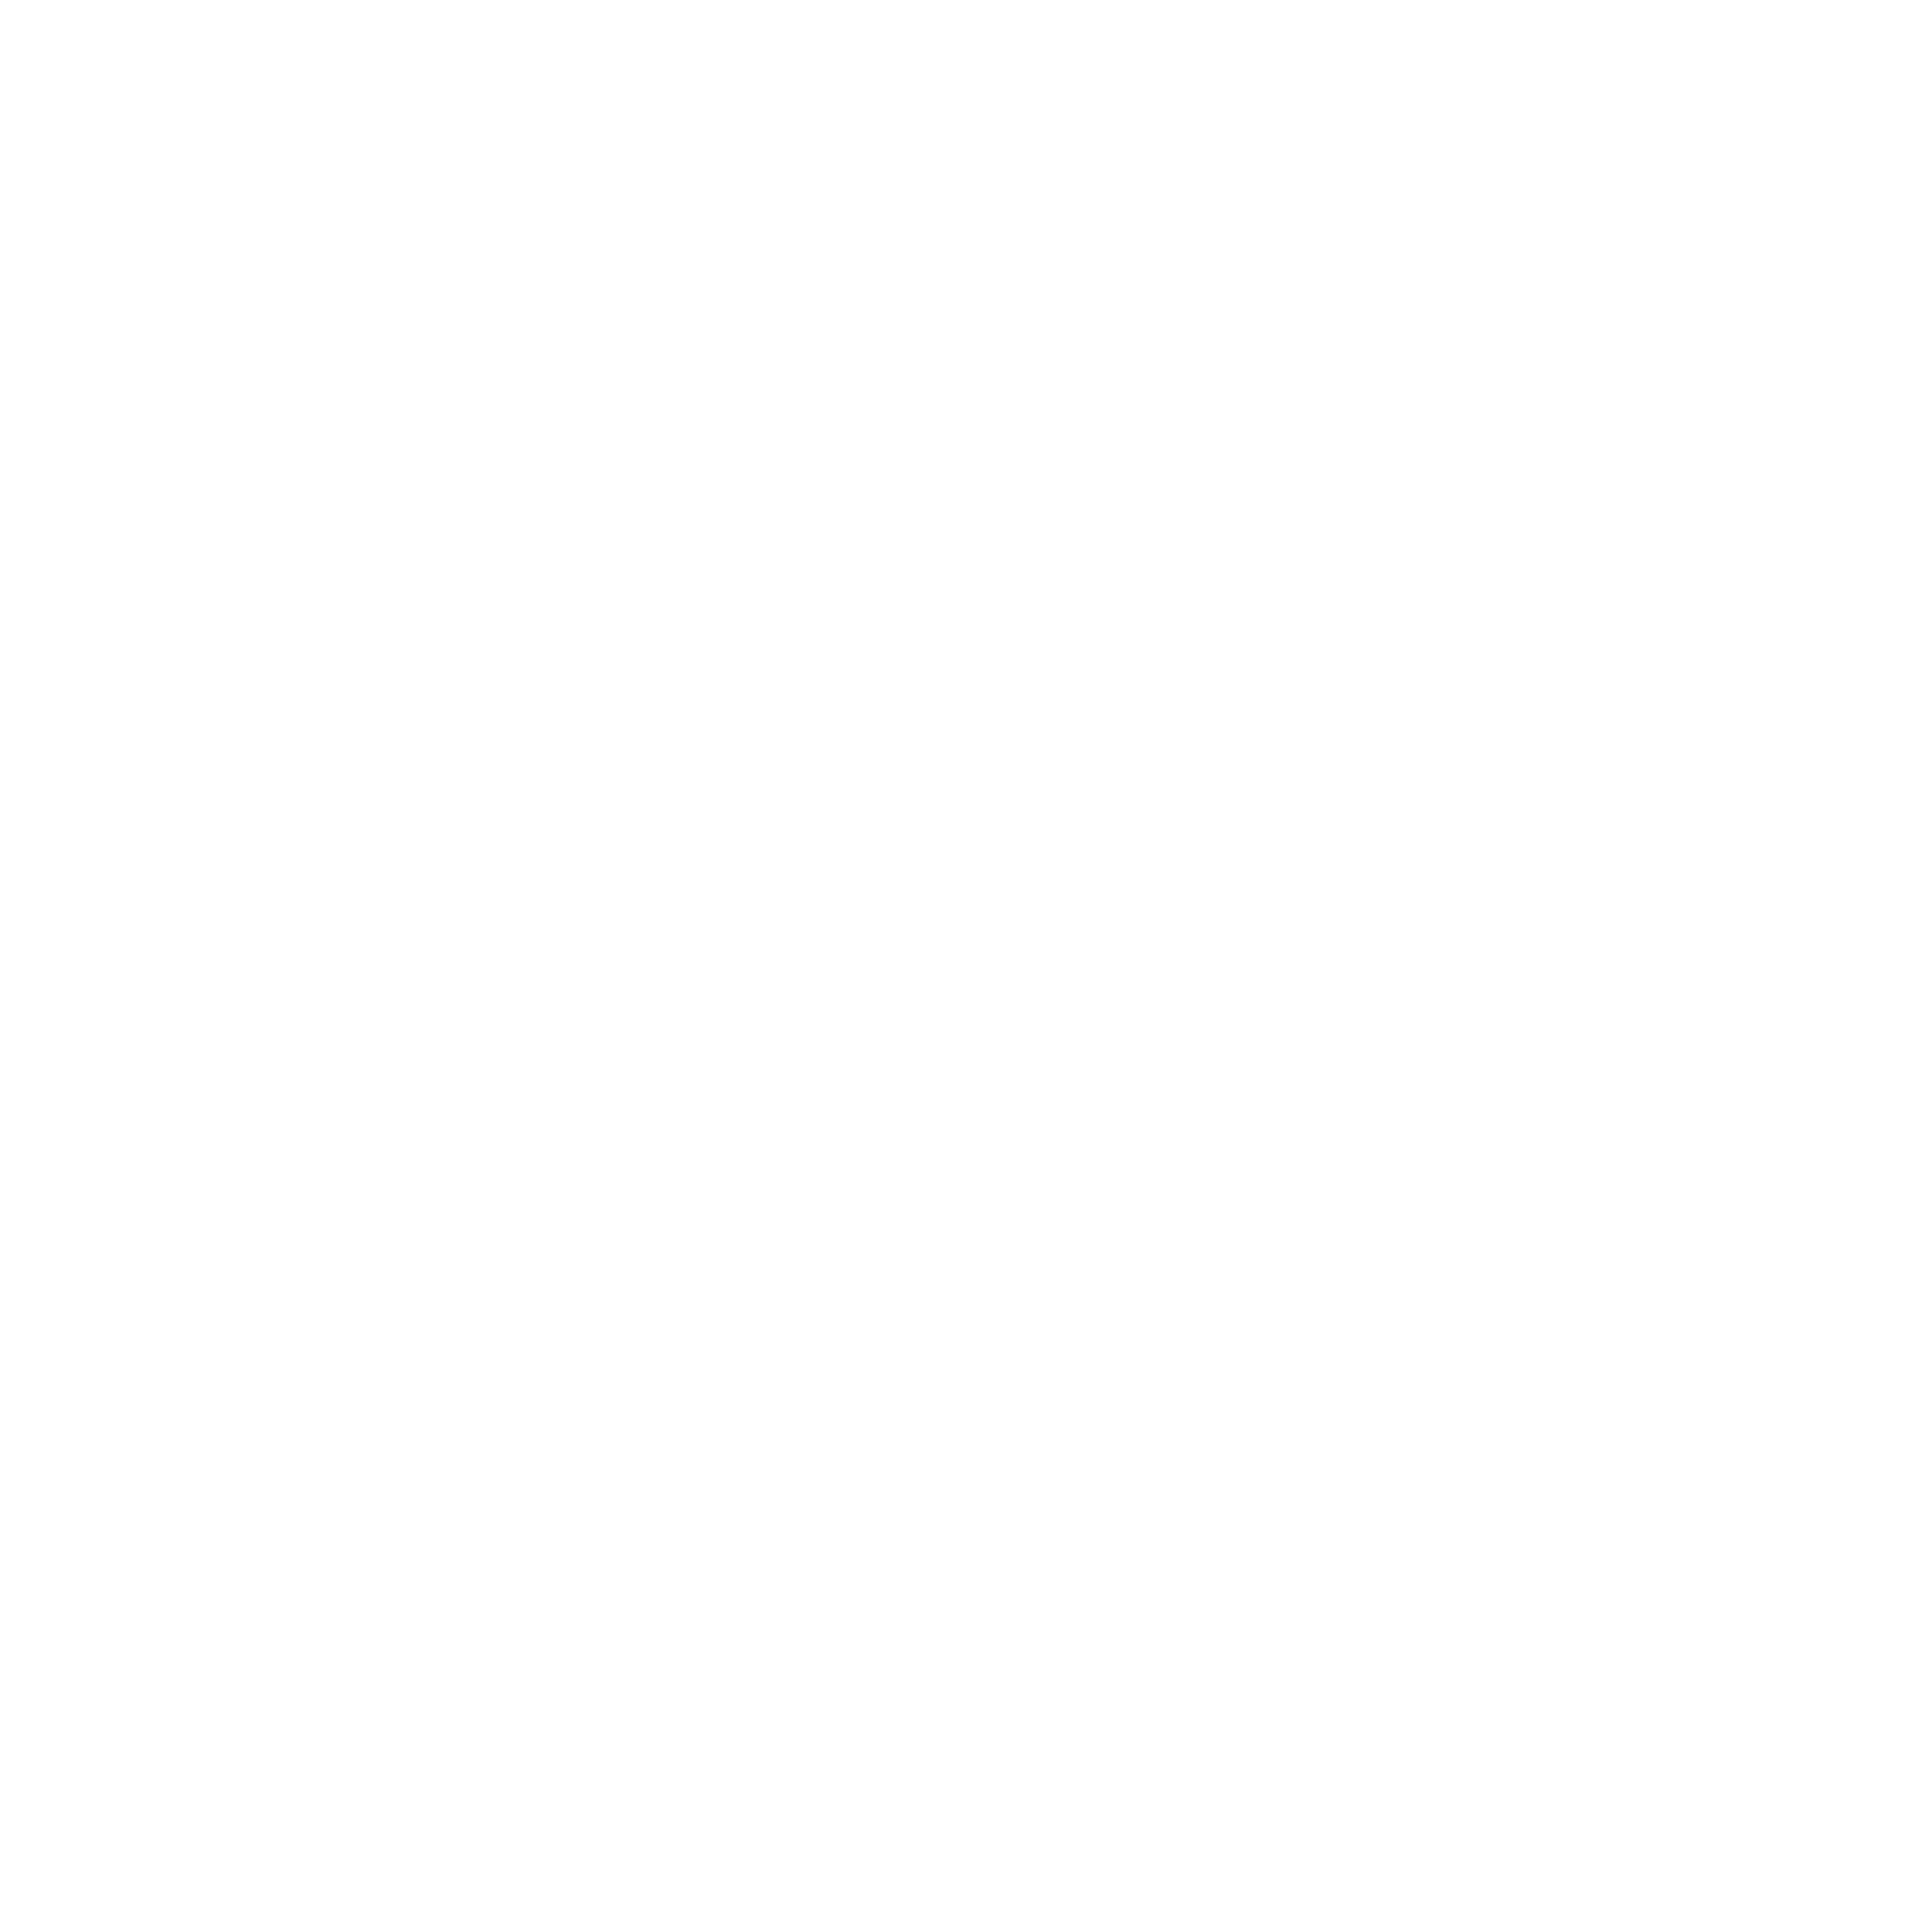 a12-logo.png